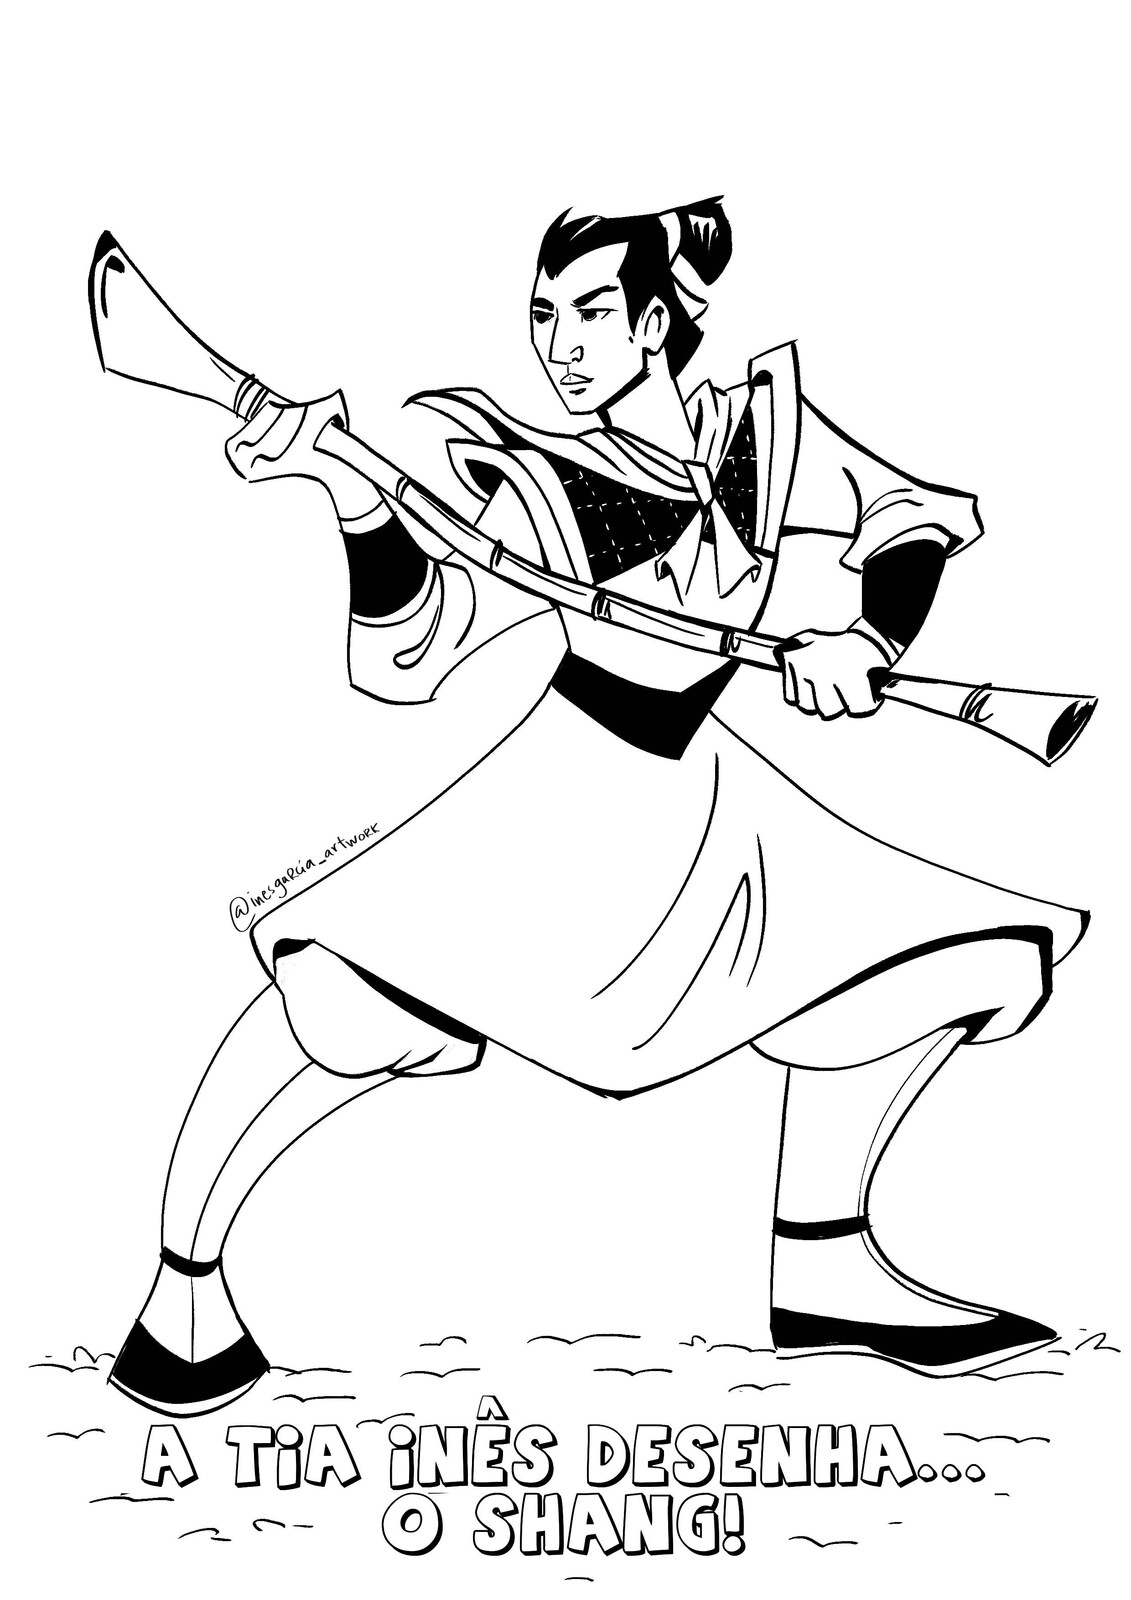 Shang from "Mulan" Fan Art